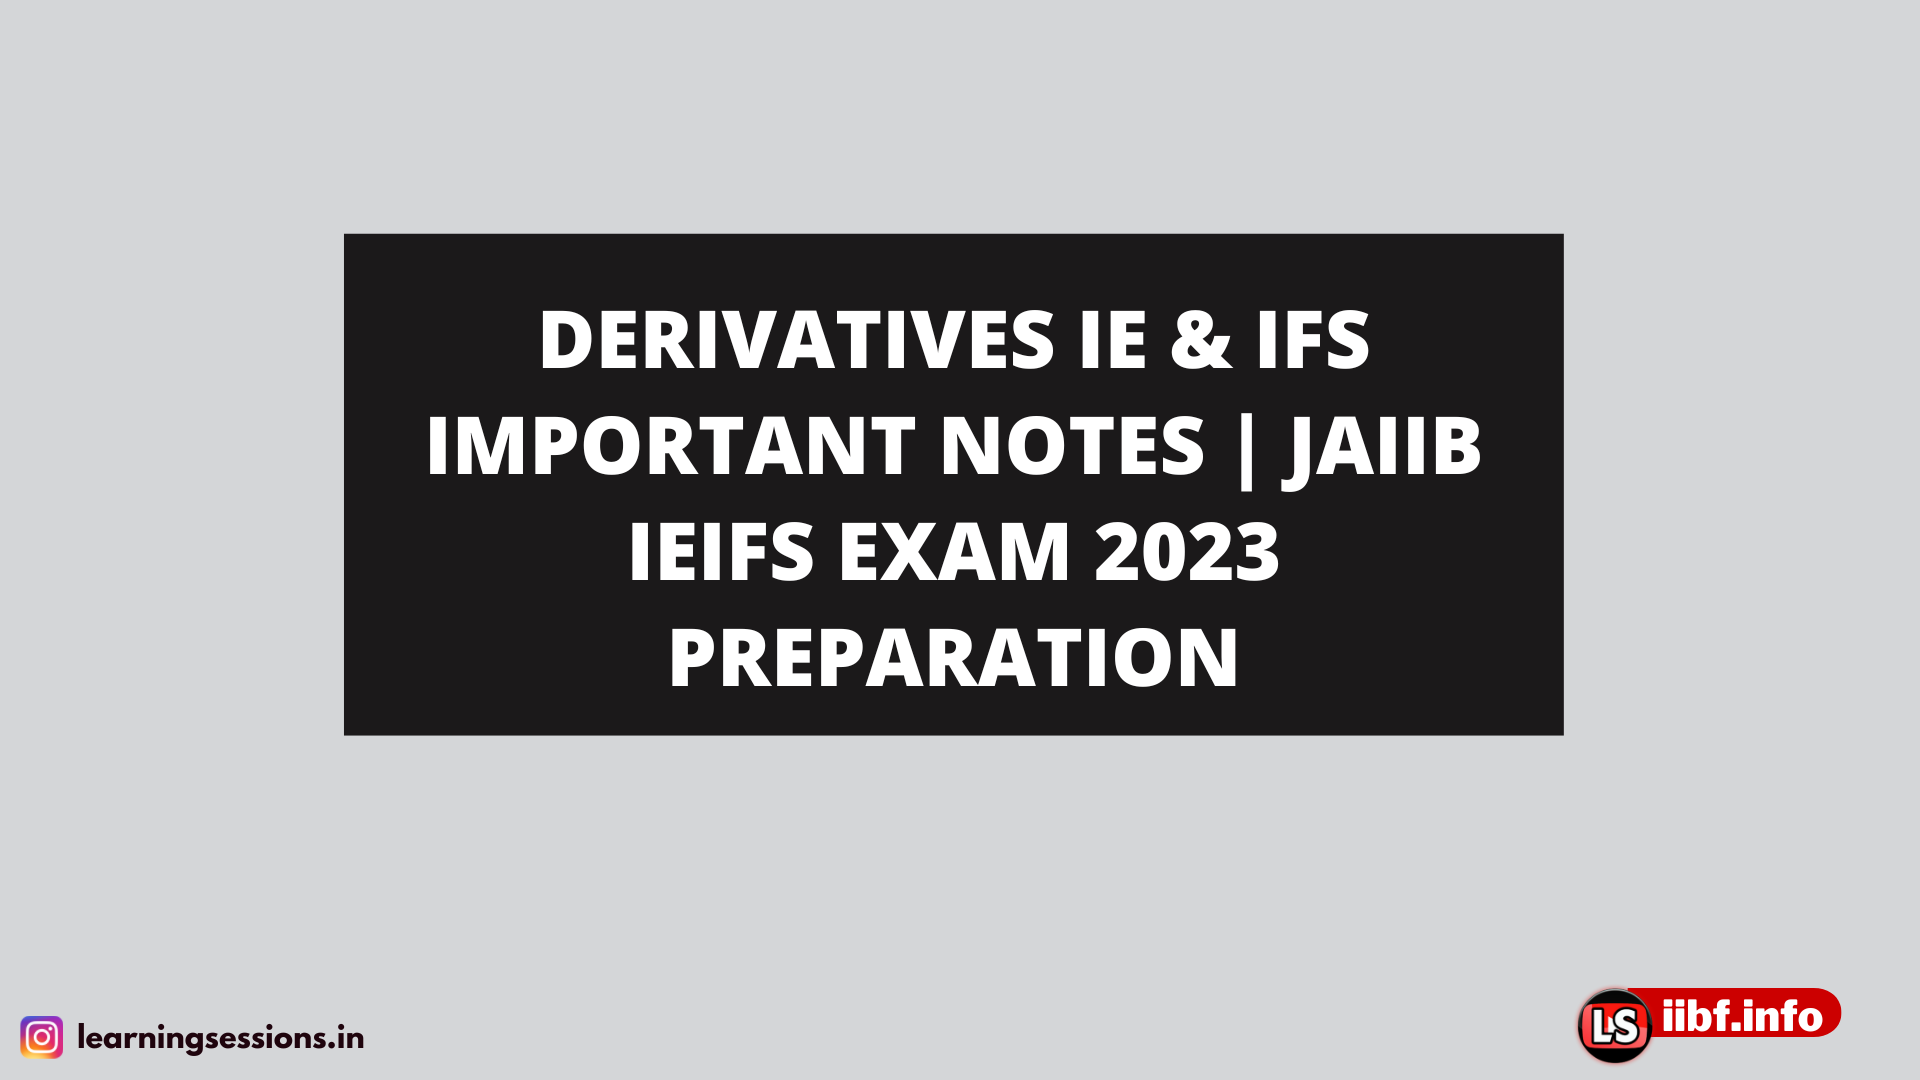 DERIVATIVES IE & IFS IMPORTANT NOTES | JAIIB IEIFS EXAM 2023 PREPARATION